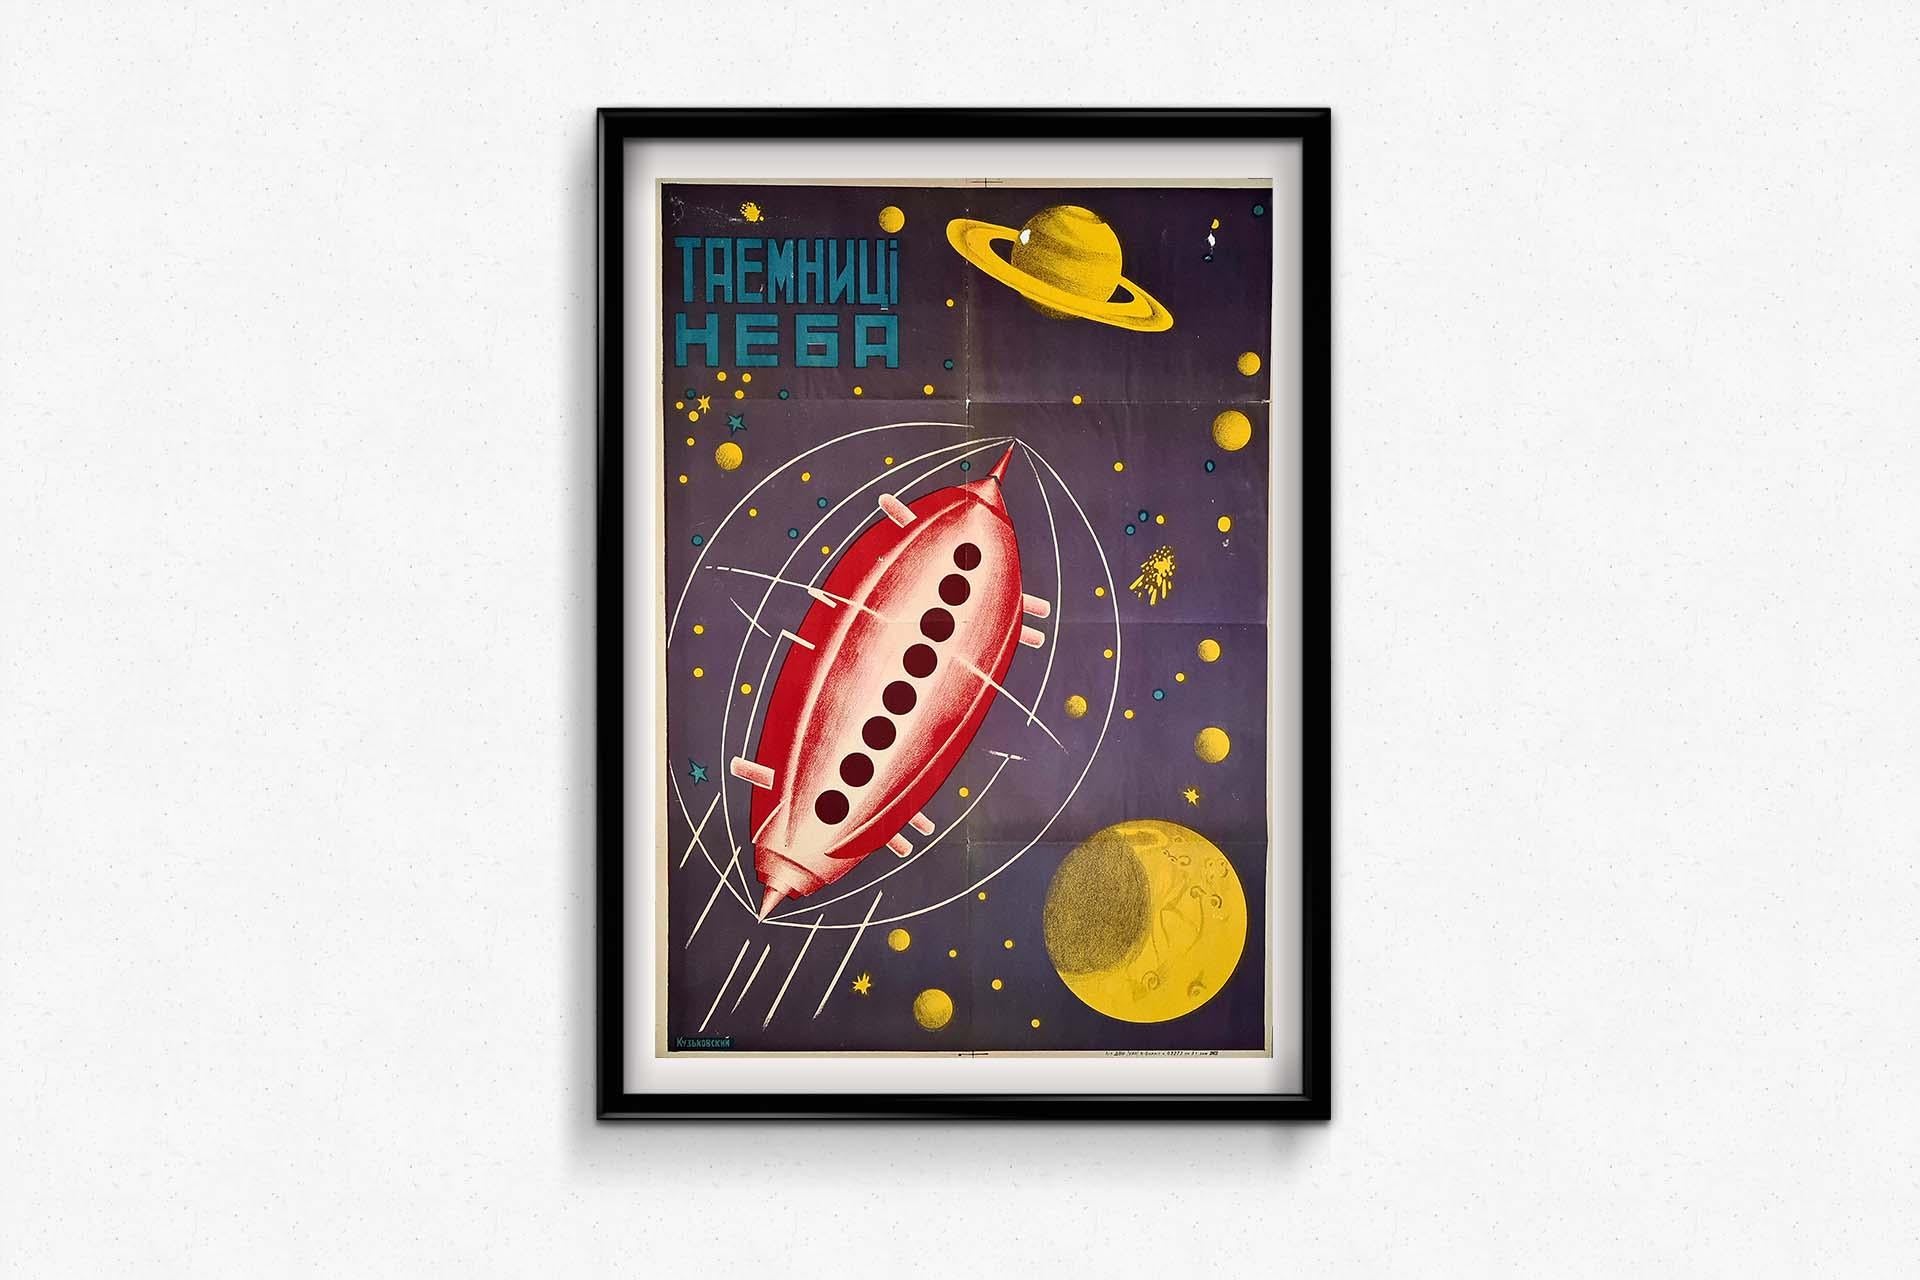 Dieses Poster entführt uns in die faszinierende Ära der frühen sowjetischen Weltraumforschung. Dieses in den 1920er Jahren entstandene Kunstwerk fängt die Aufregung und Faszination ein, die mit der Suche der Menschheit nach der Entschlüsselung der